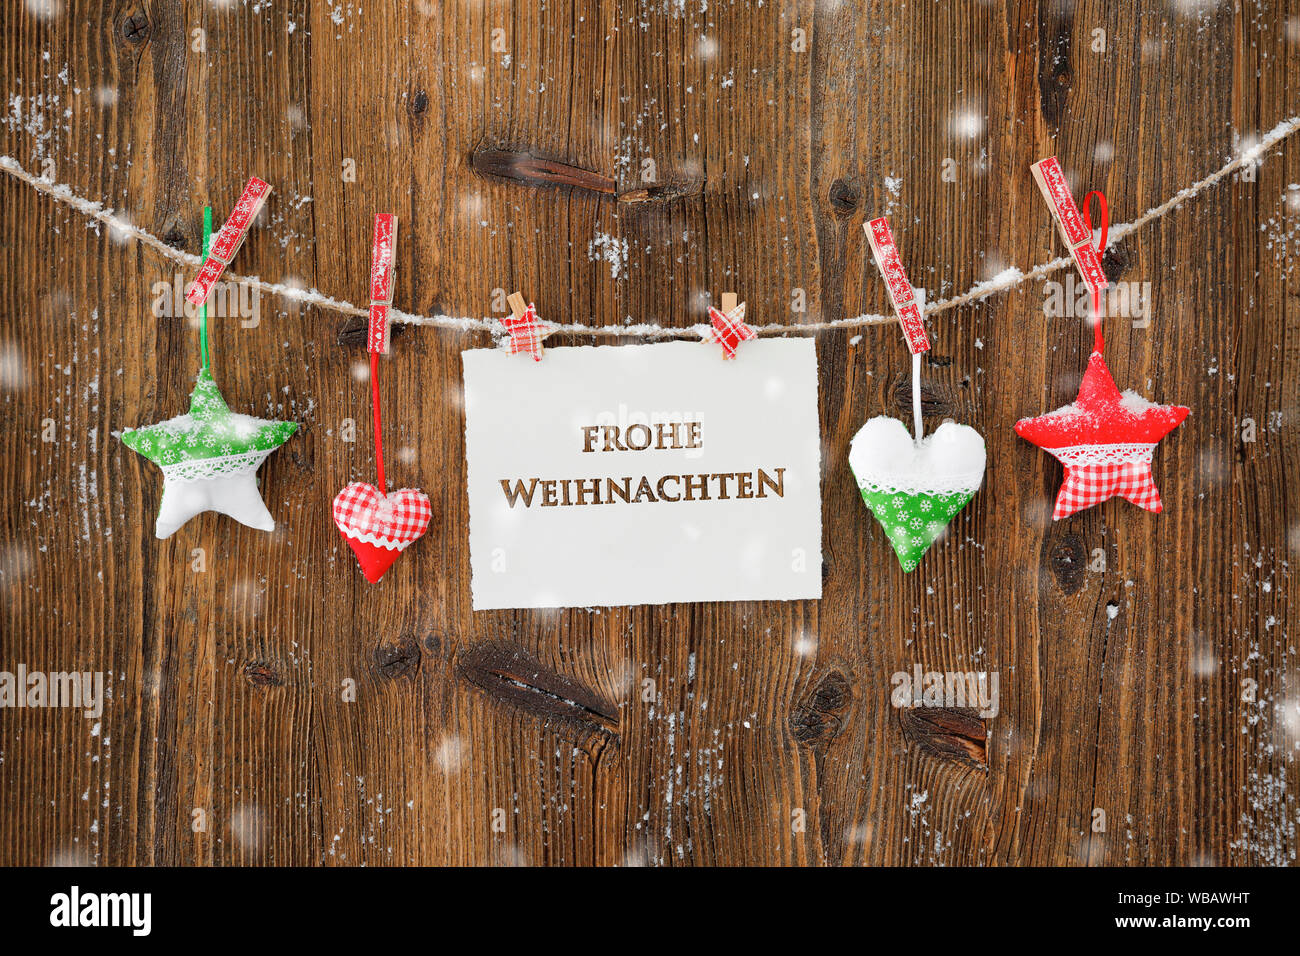 Weihnachtsdekoration mit Herzen und Sterne in Suisse, Frohe Weihnachten,  frohe Weihnachten, Schweiz Stockfotografie - Alamy